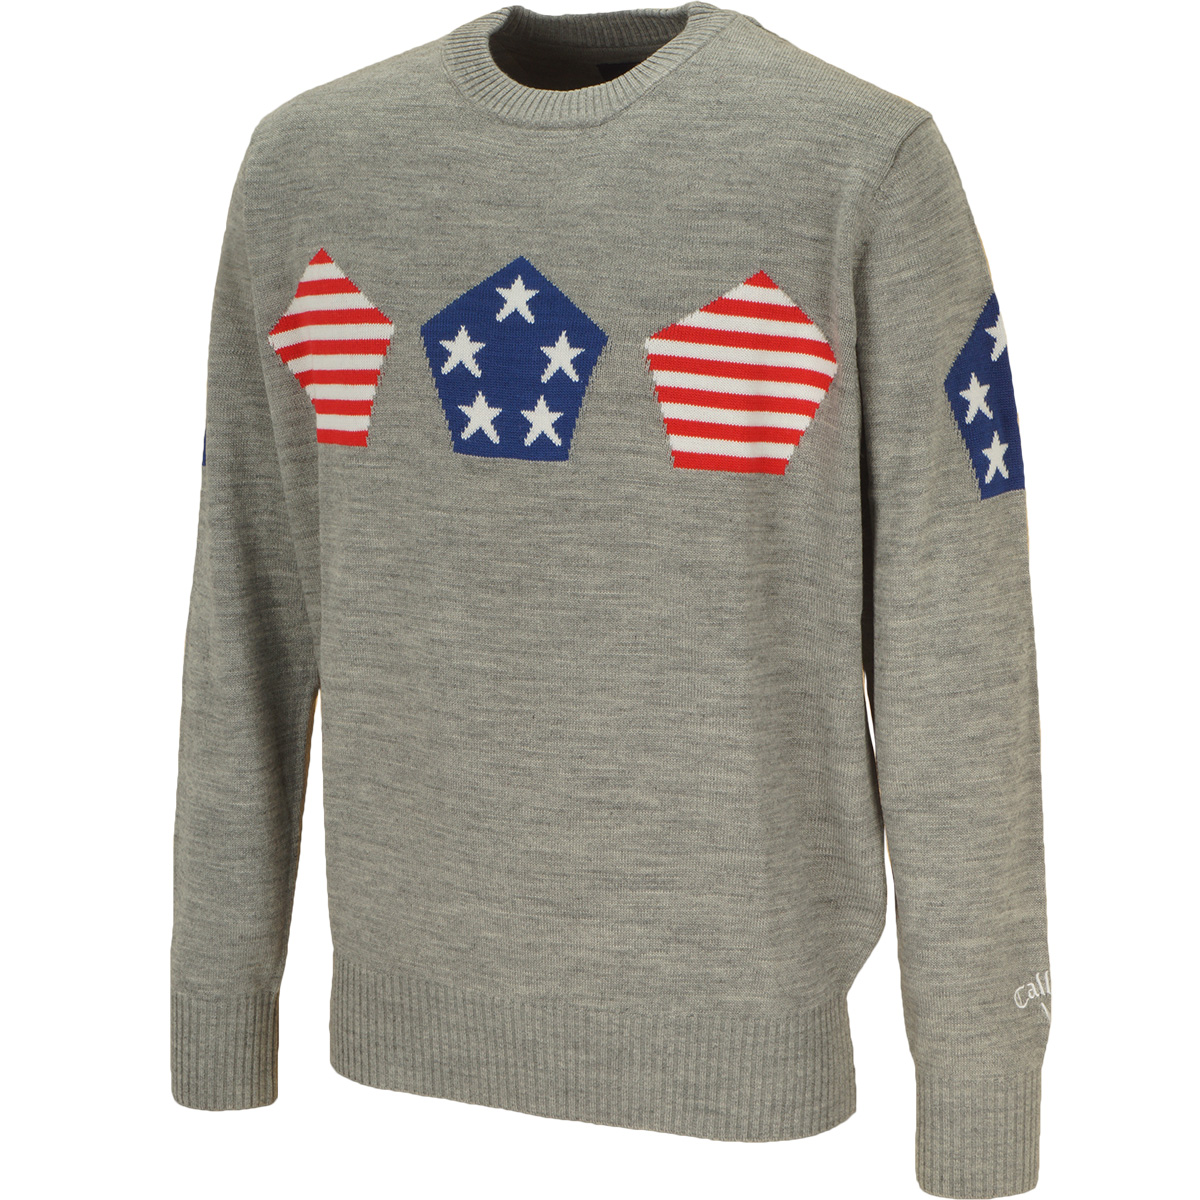  アメリカ柄クルーネックセーター 